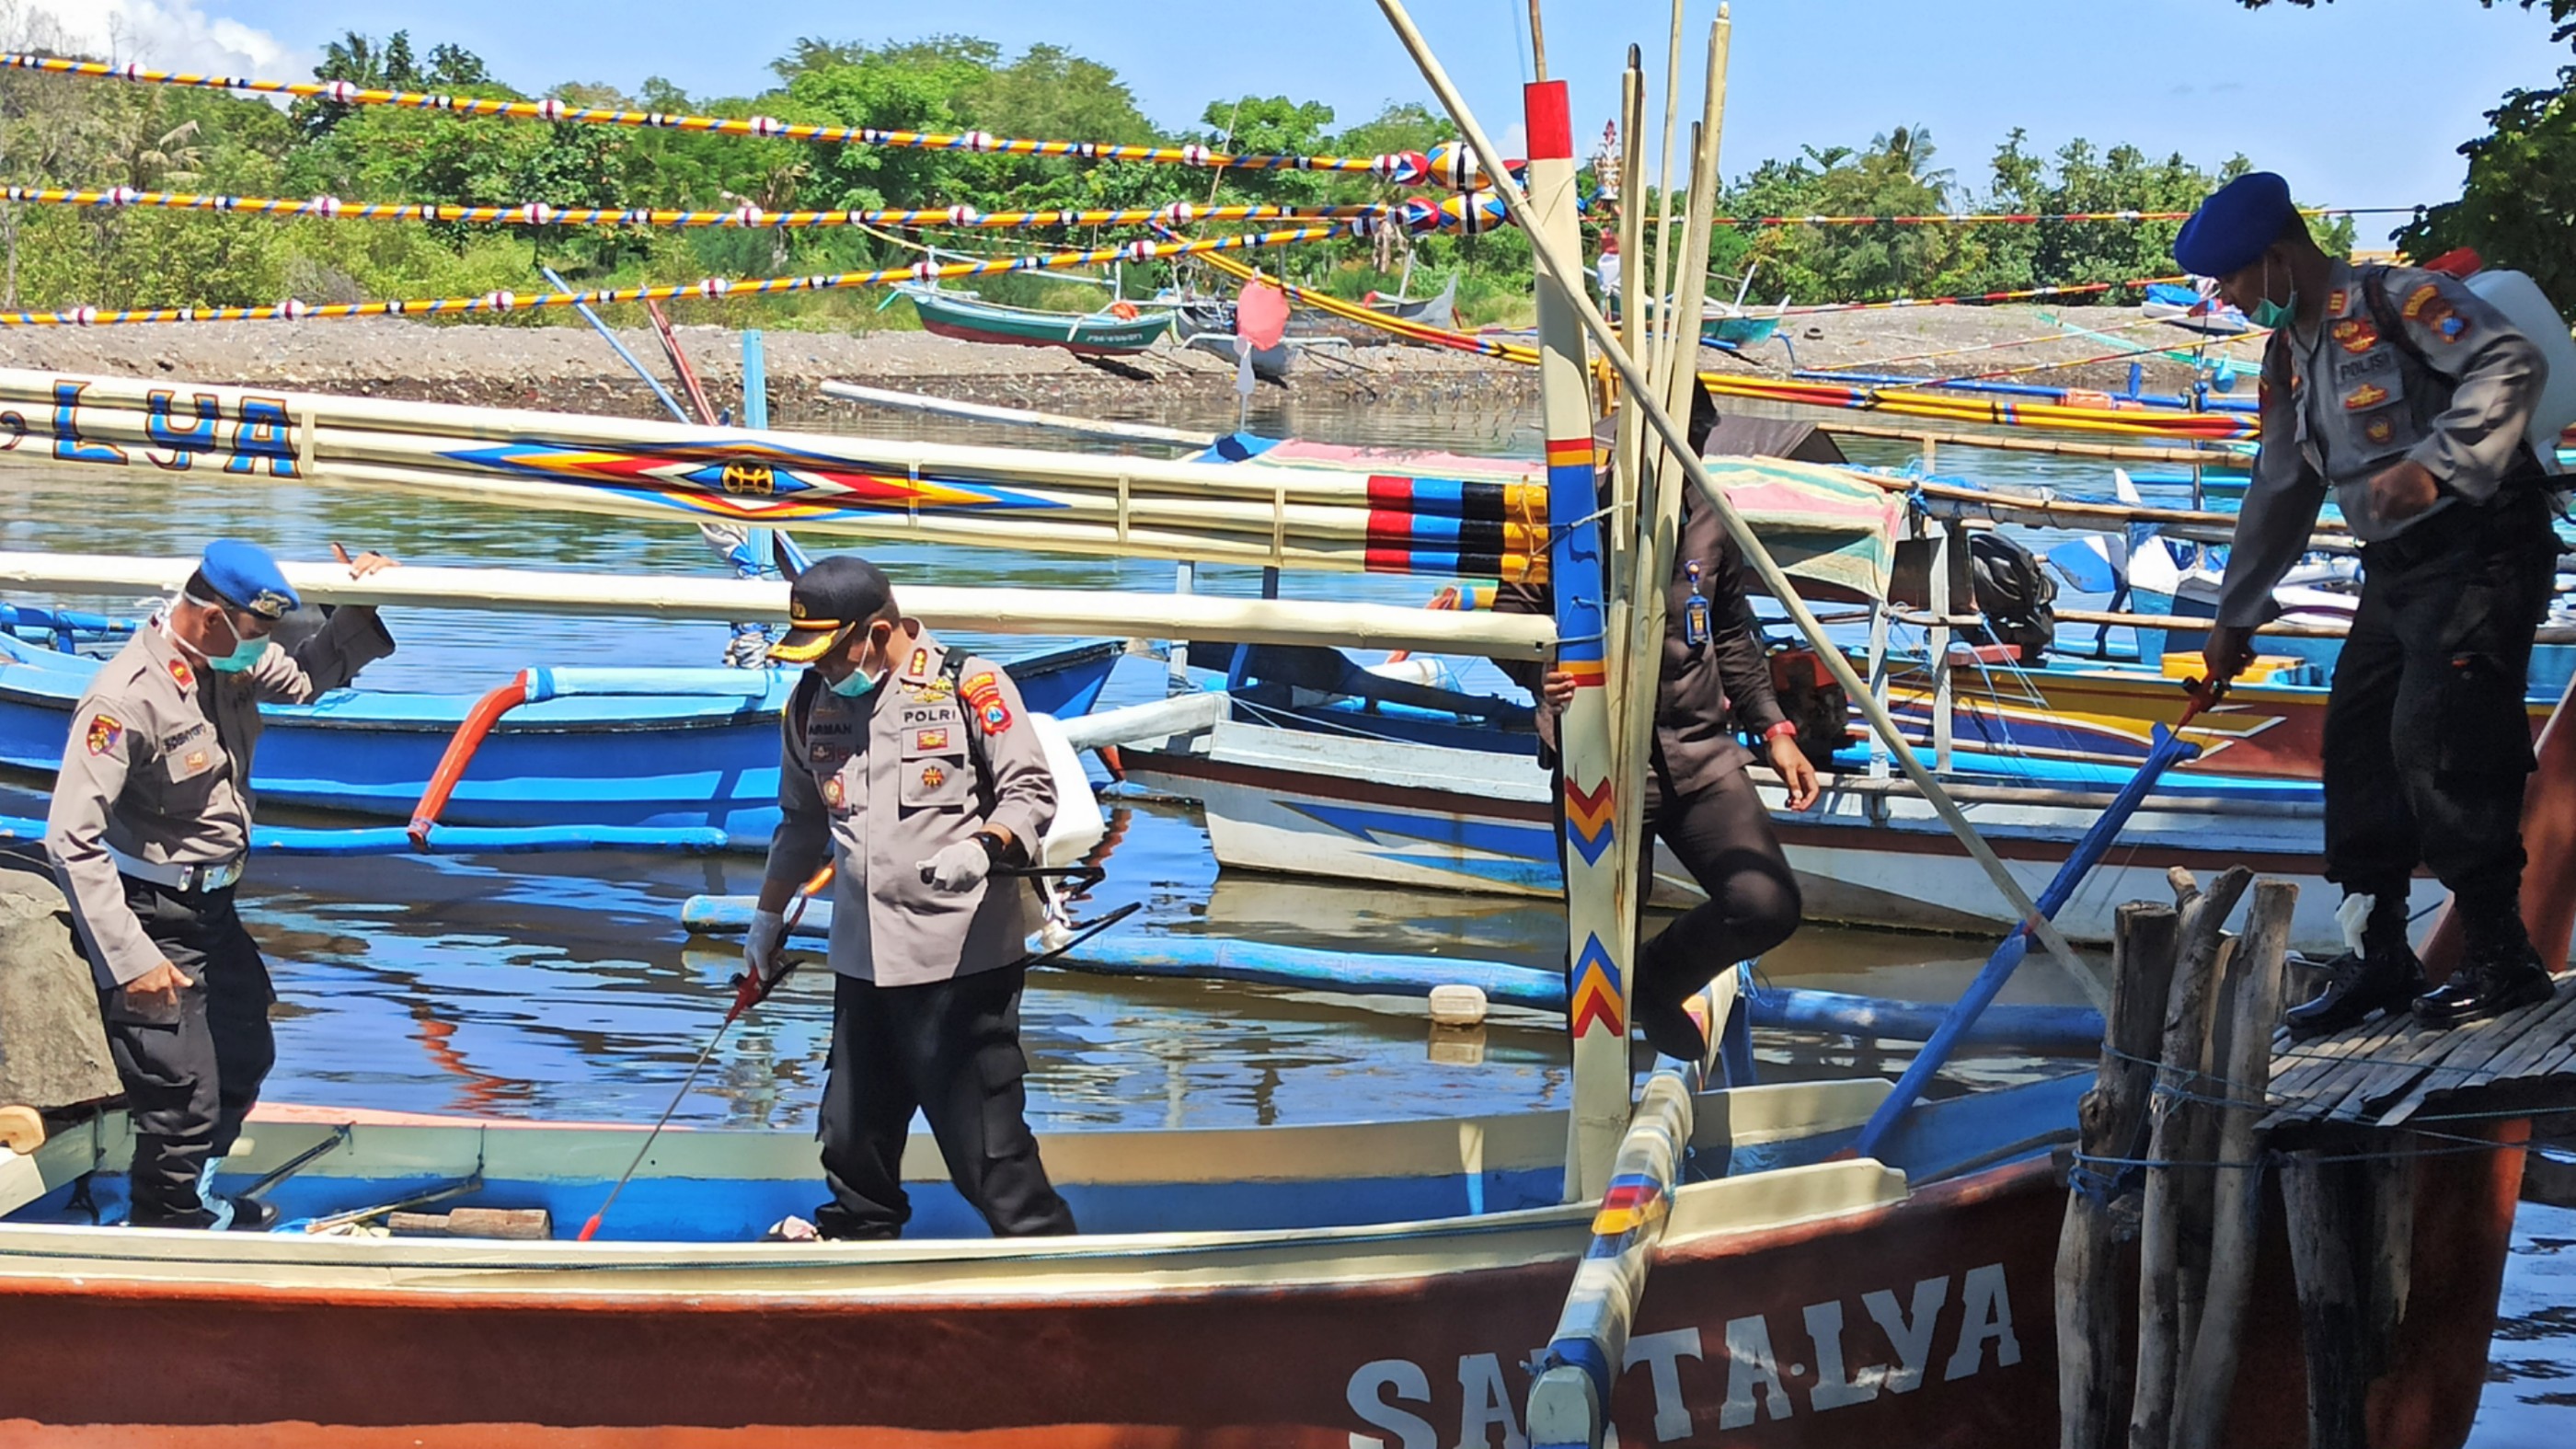 Kapolresta Banyuwangi Kombespol Arman Asmara Syarifuddin turut melakukan penyemprotan disinfektan pada kapal nelayan di Kampung Mandar. (Foto: Istimewa)